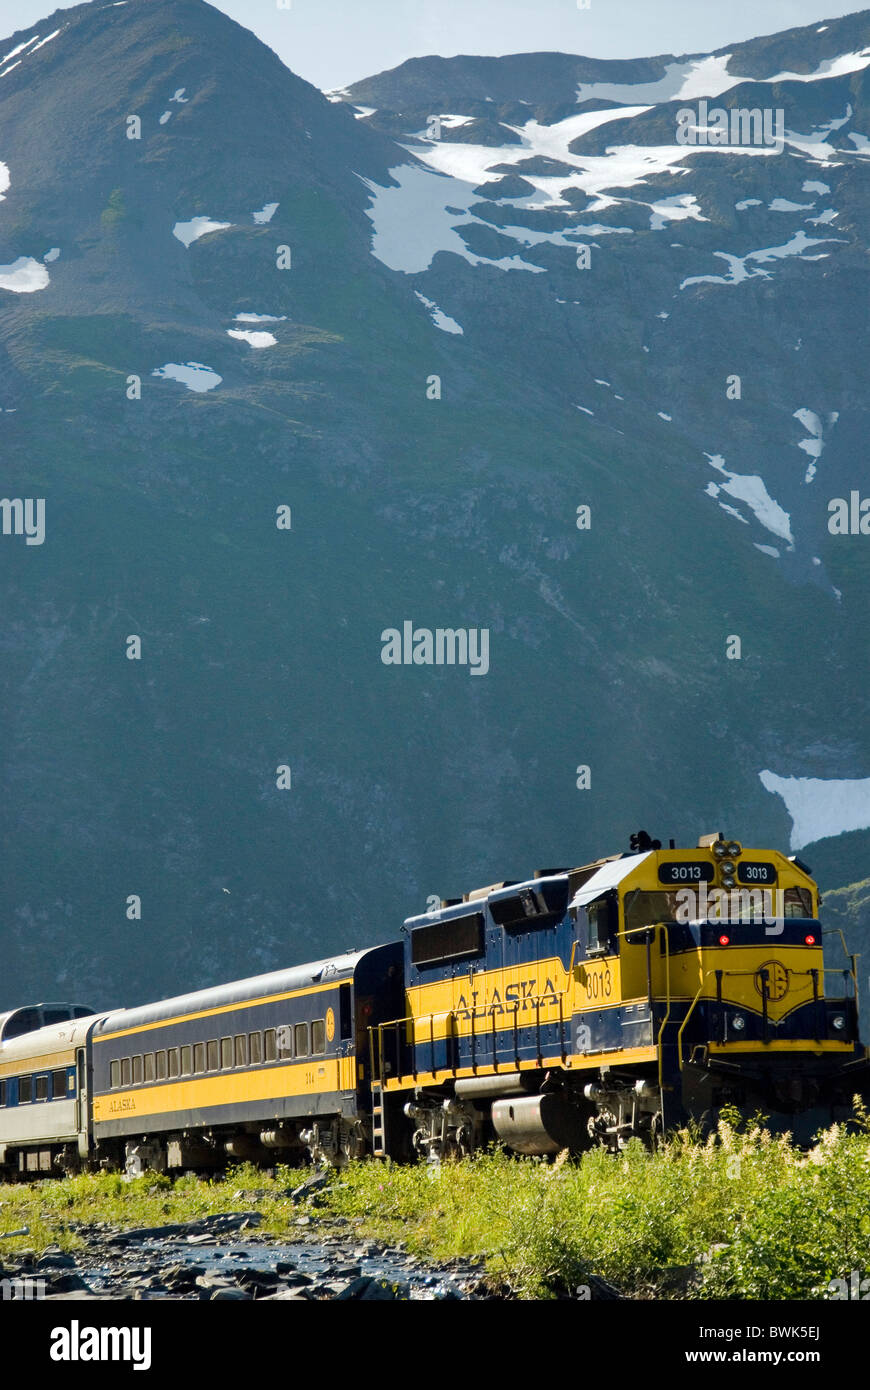 Alaska Railroad train transport routier trafic ferroviaire des montagnes de fer Seward USA Amérique États-unis N Banque D'Images